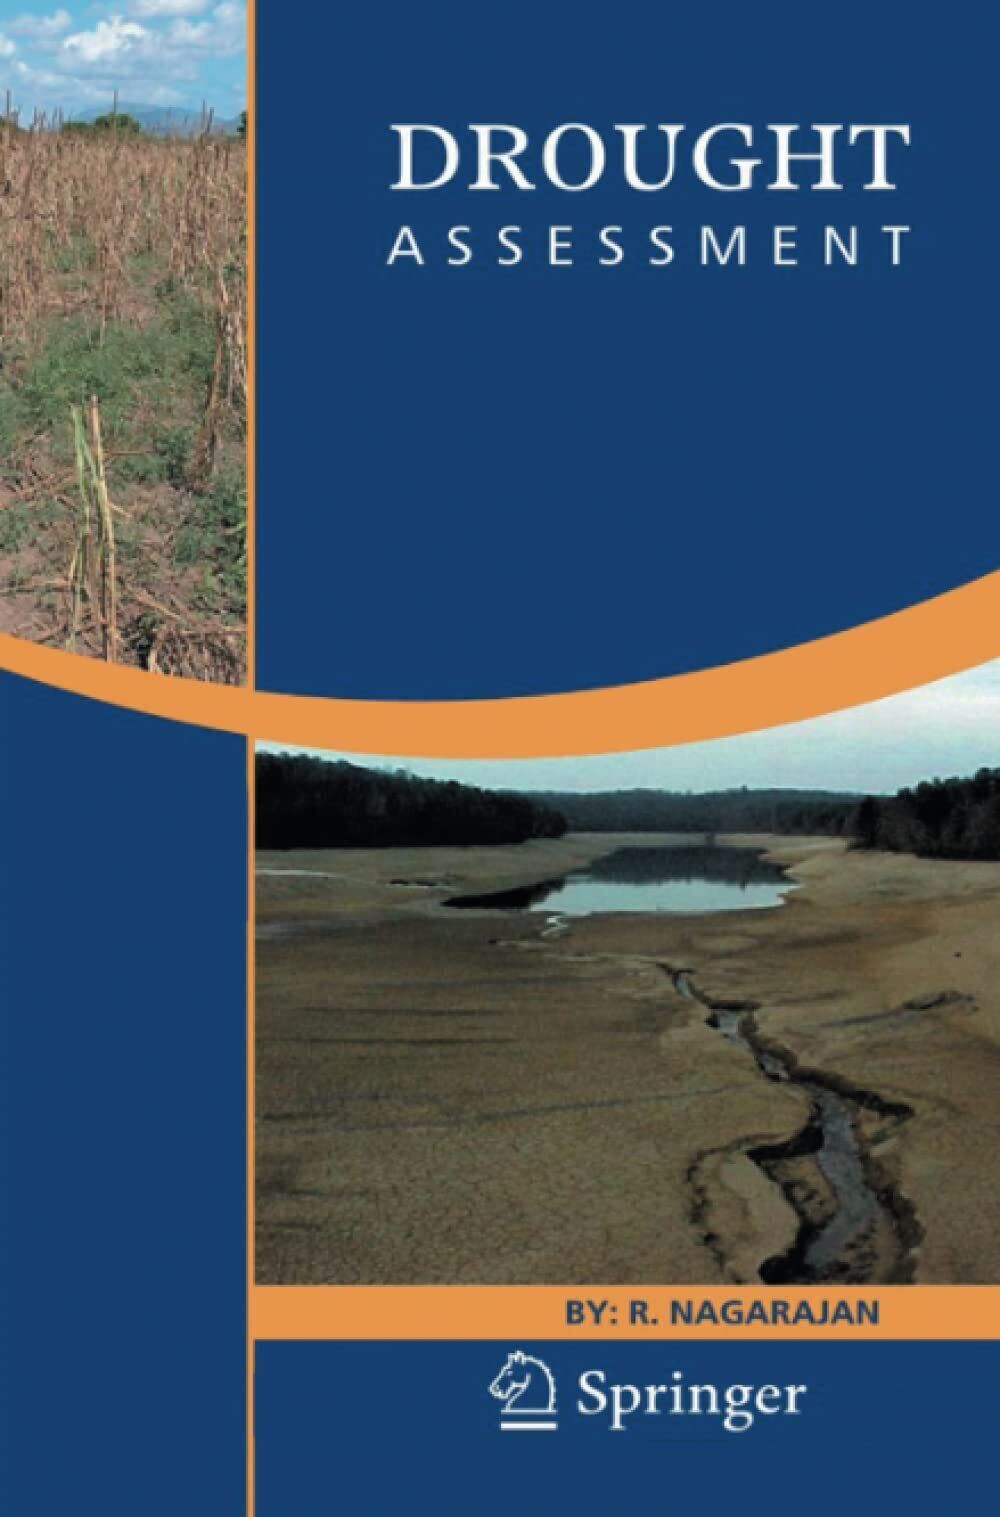 Drought Assessment - R. Nagarajan - Springer, 2014